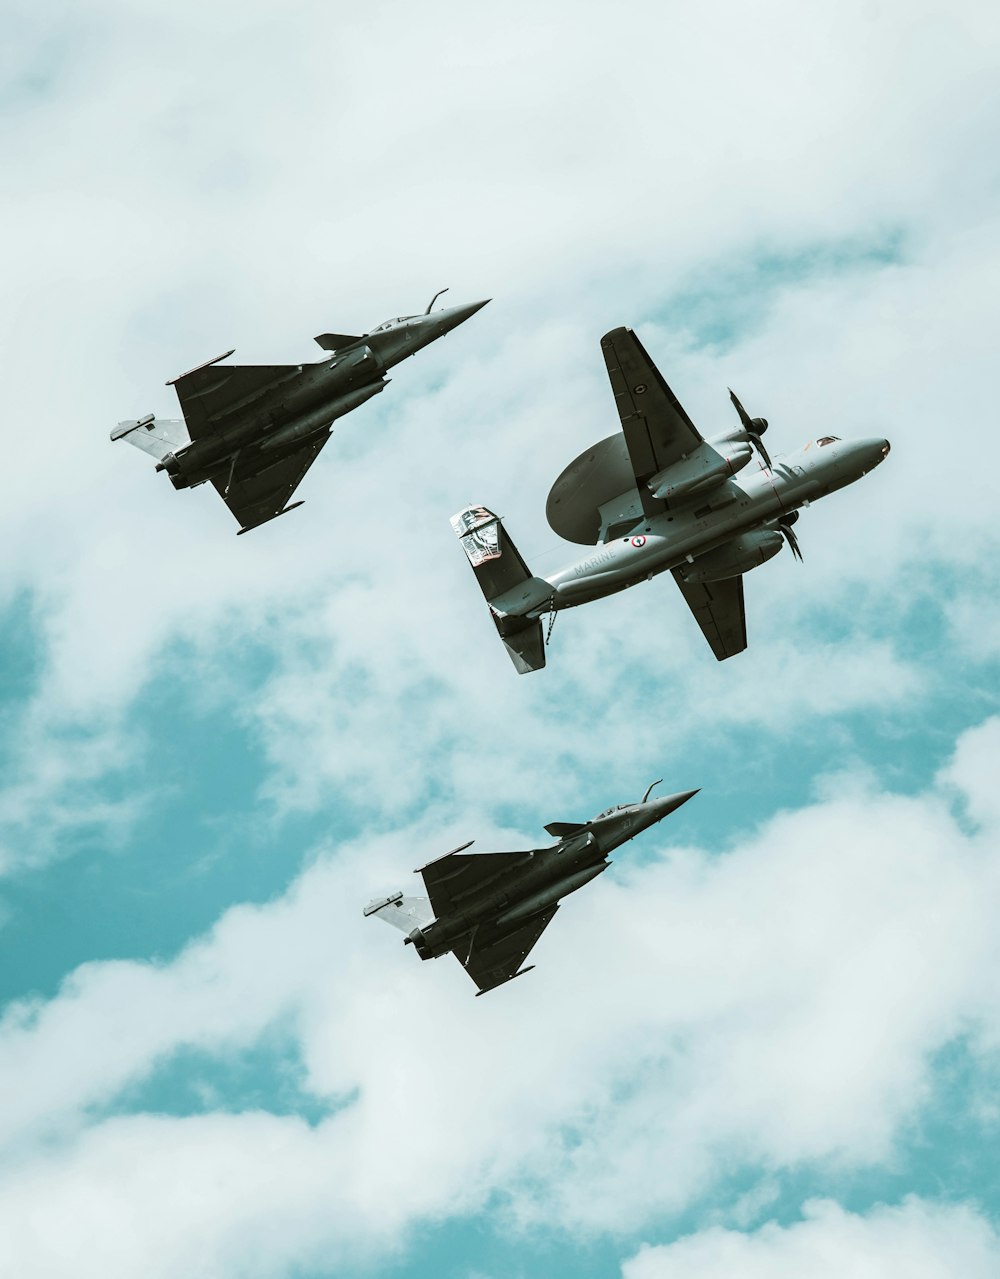 Un groupe d’avions de chasse volant dans un ciel nuageux